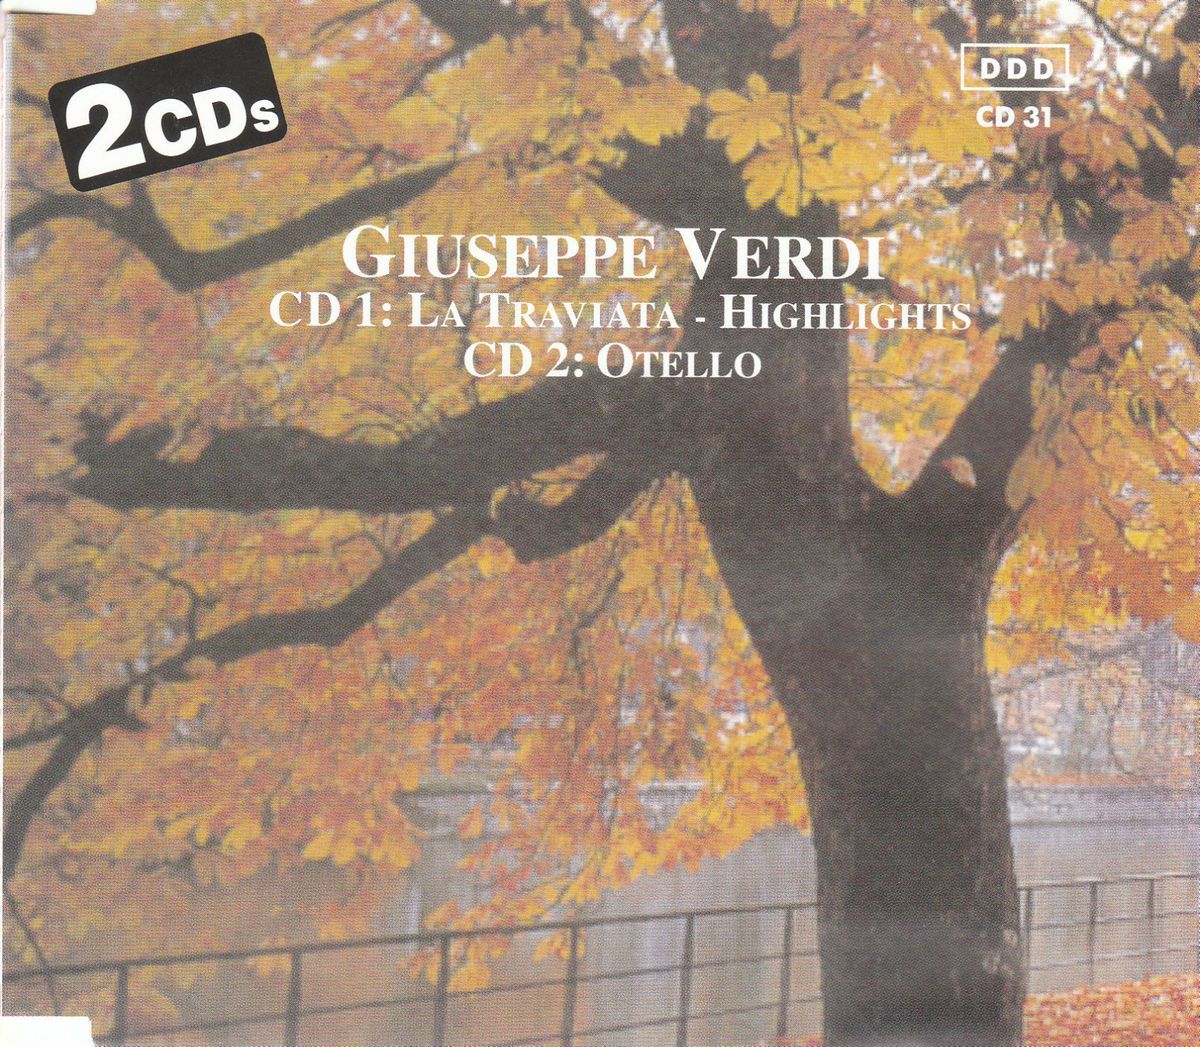 Highlights from Giuseppe Verdis La Traviata Otello 2 CD Set 1990